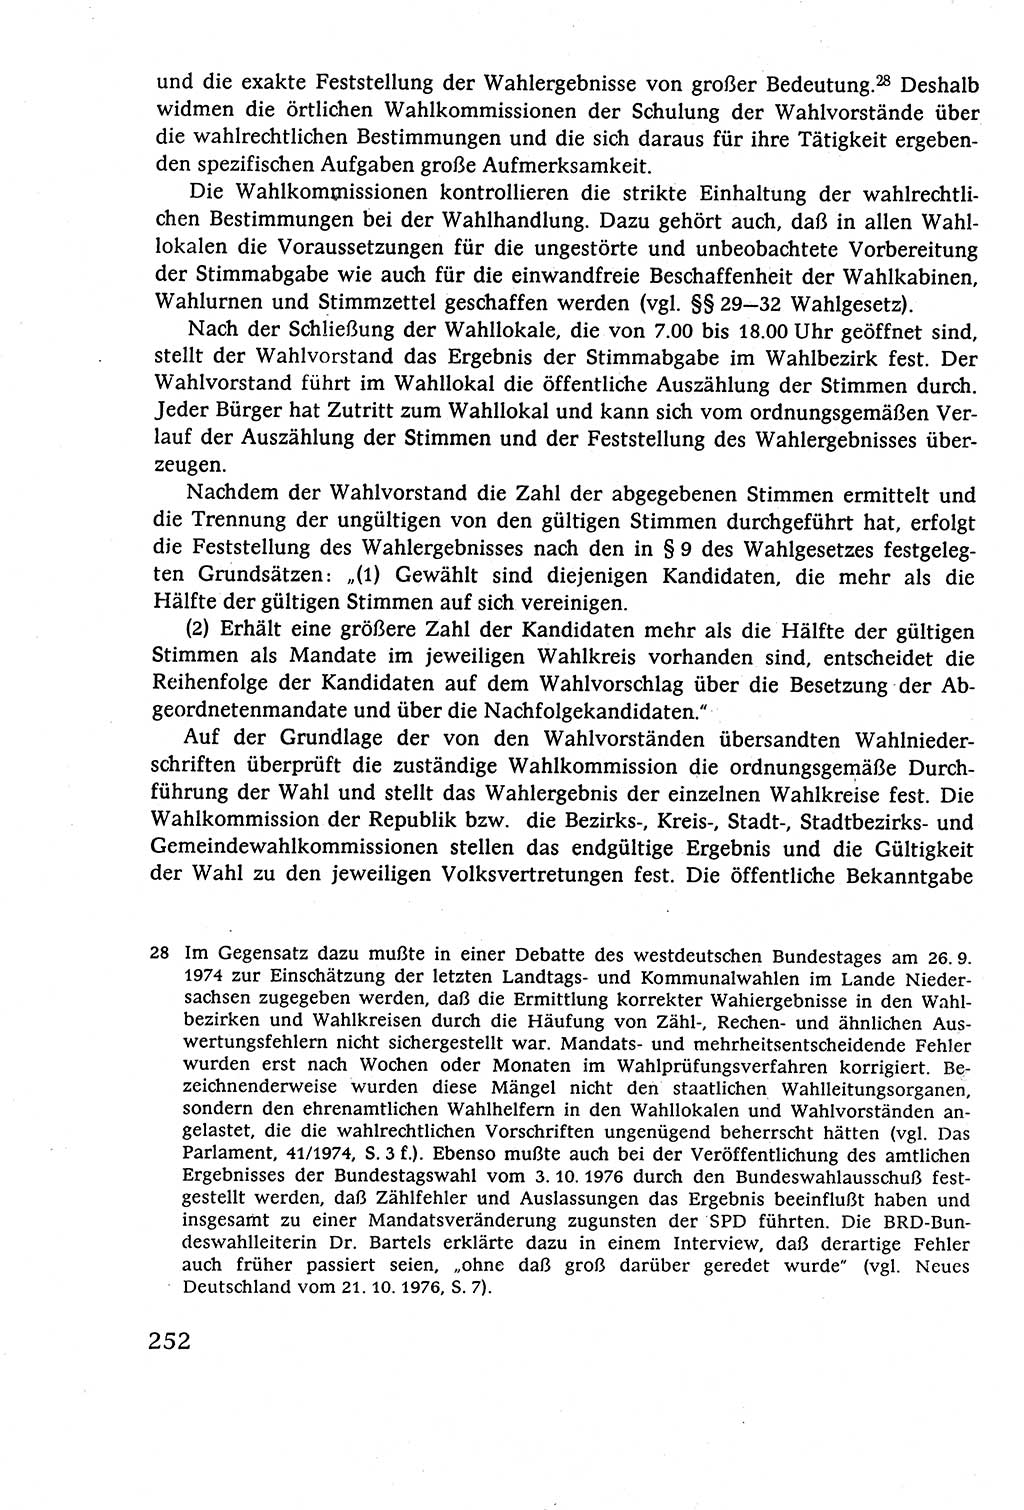 Staatsrecht der DDR (Deutsche Demokratische Republik), Lehrbuch 1977, Seite 252 (St.-R. DDR Lb. 1977, S. 252)